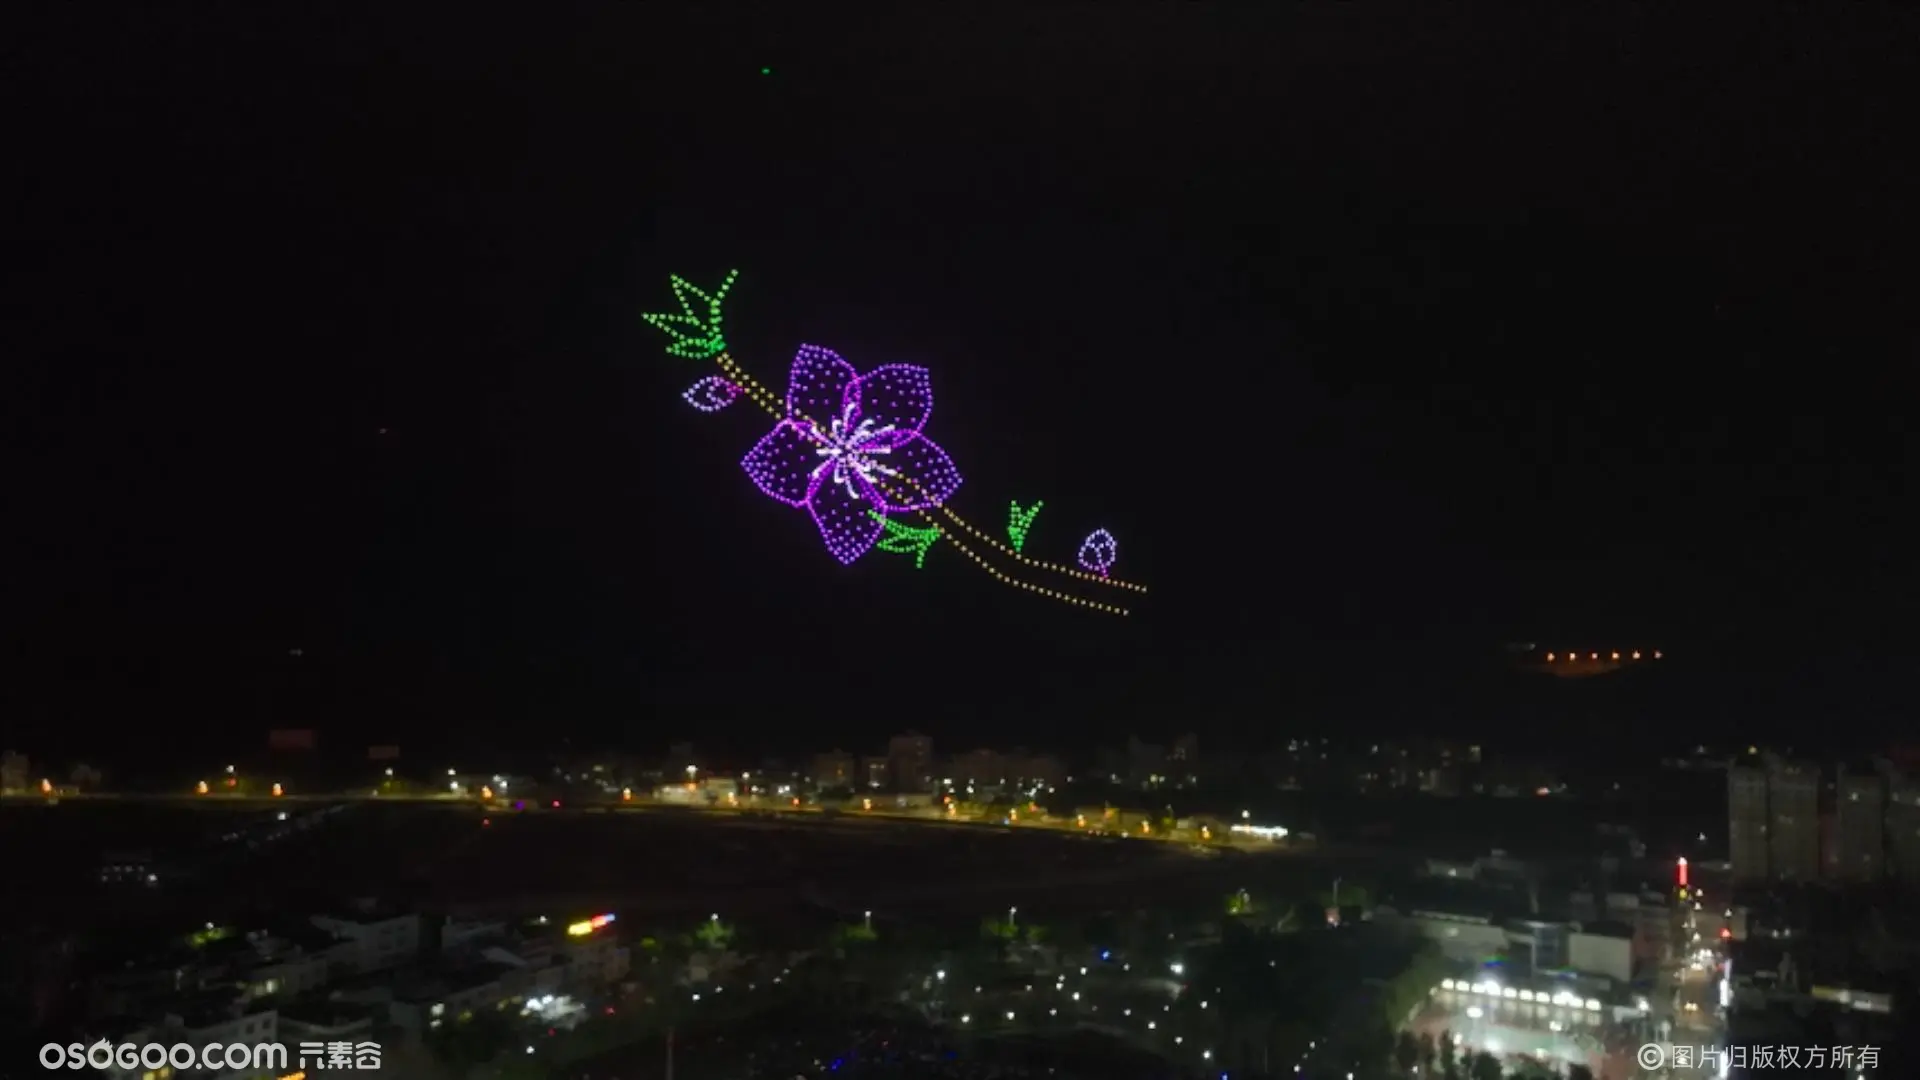 800台无人机表演在连平桃花节暨招商经贸活动演绎精彩视觉盛宴